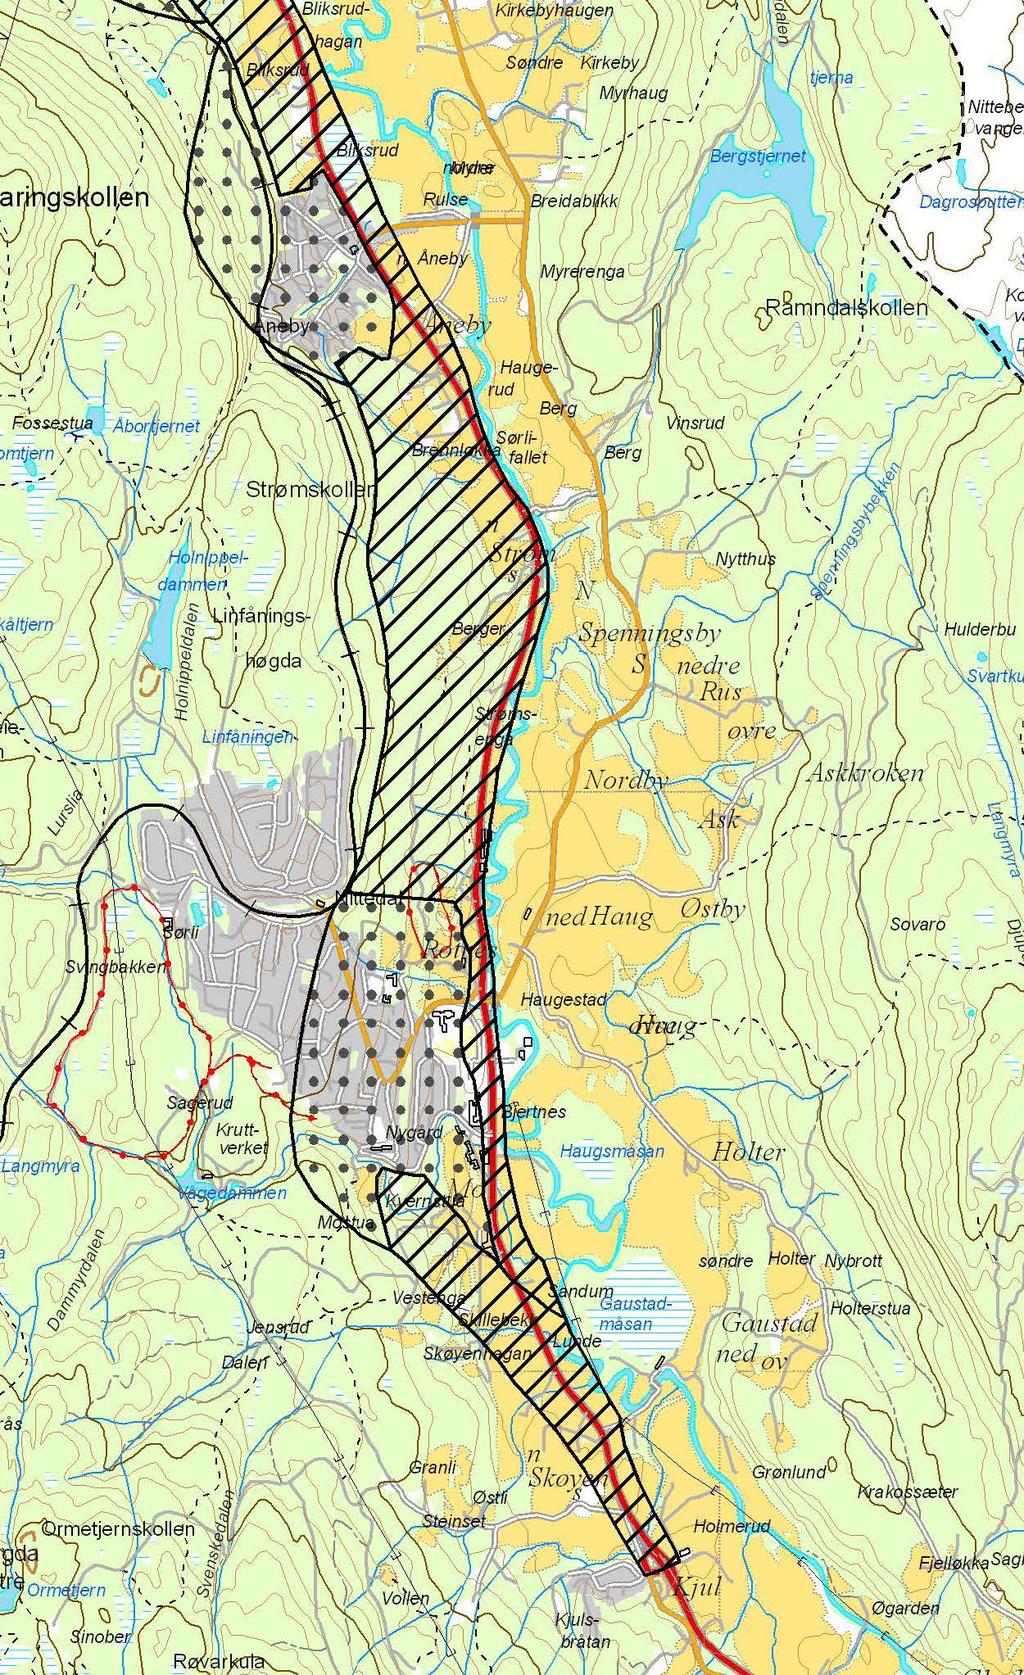 Tilbakeblikk Oktober 2009: planprogram fastsatt av Nittedal kommune Kjul-Åneby sør Det skal vurderes